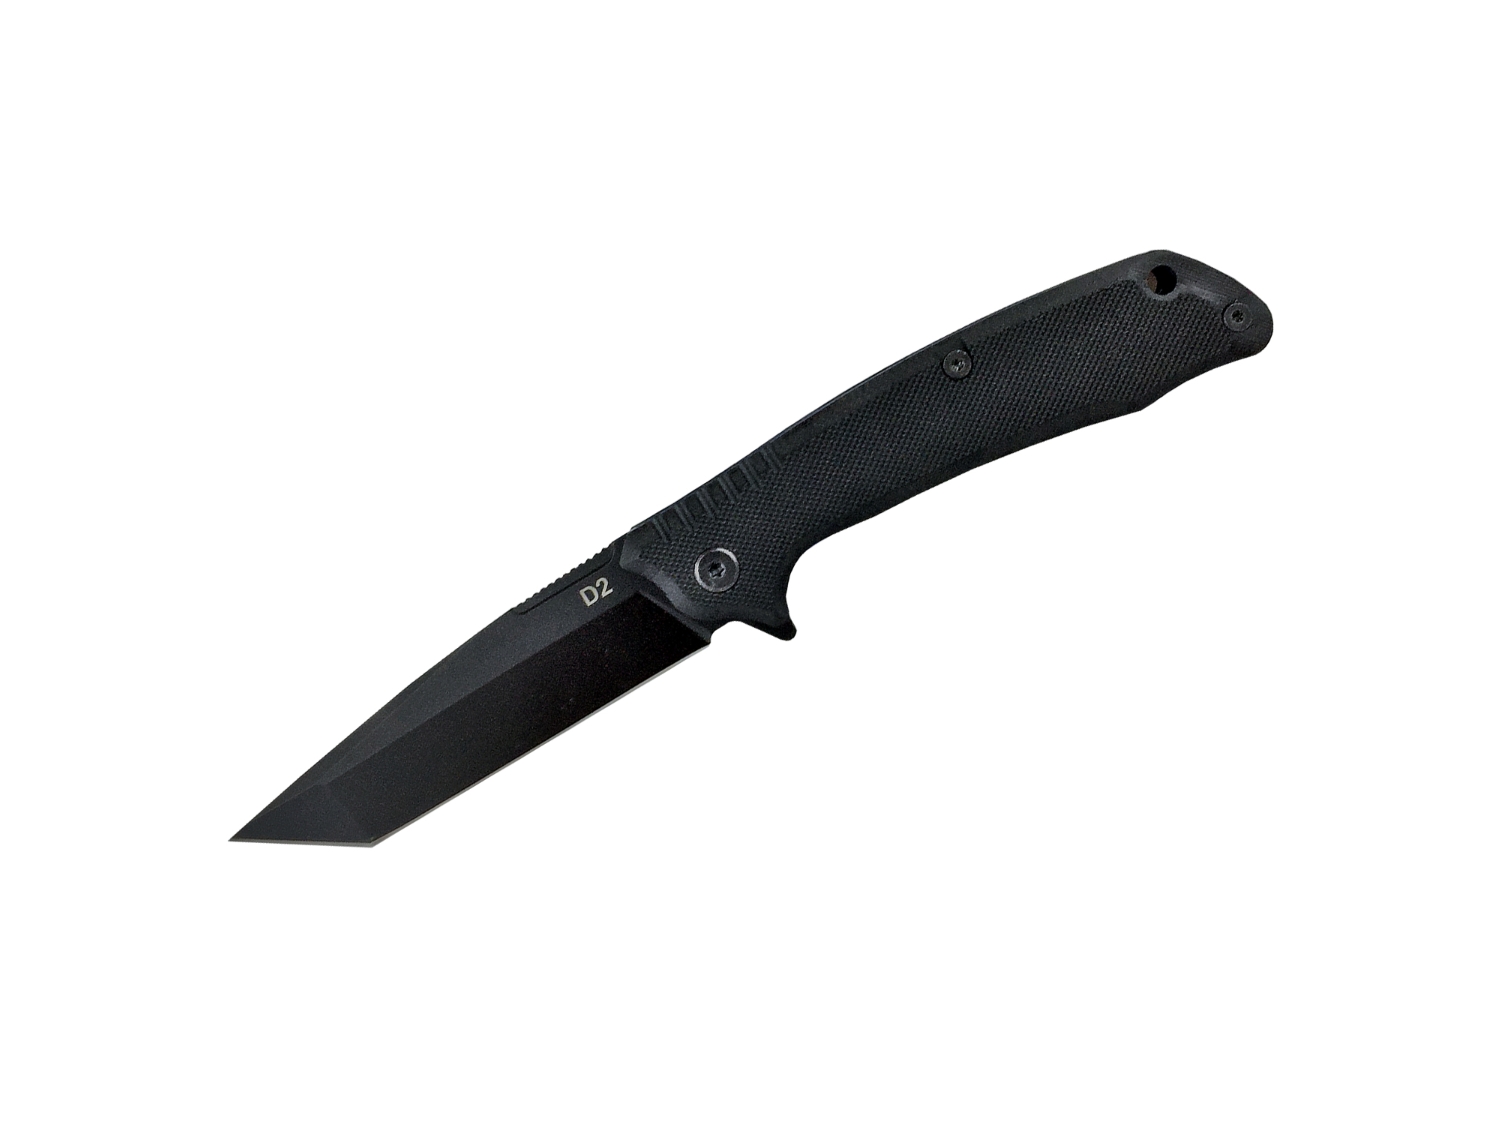 ABKT Scavenger Ball Bearing Folding Knife, Black